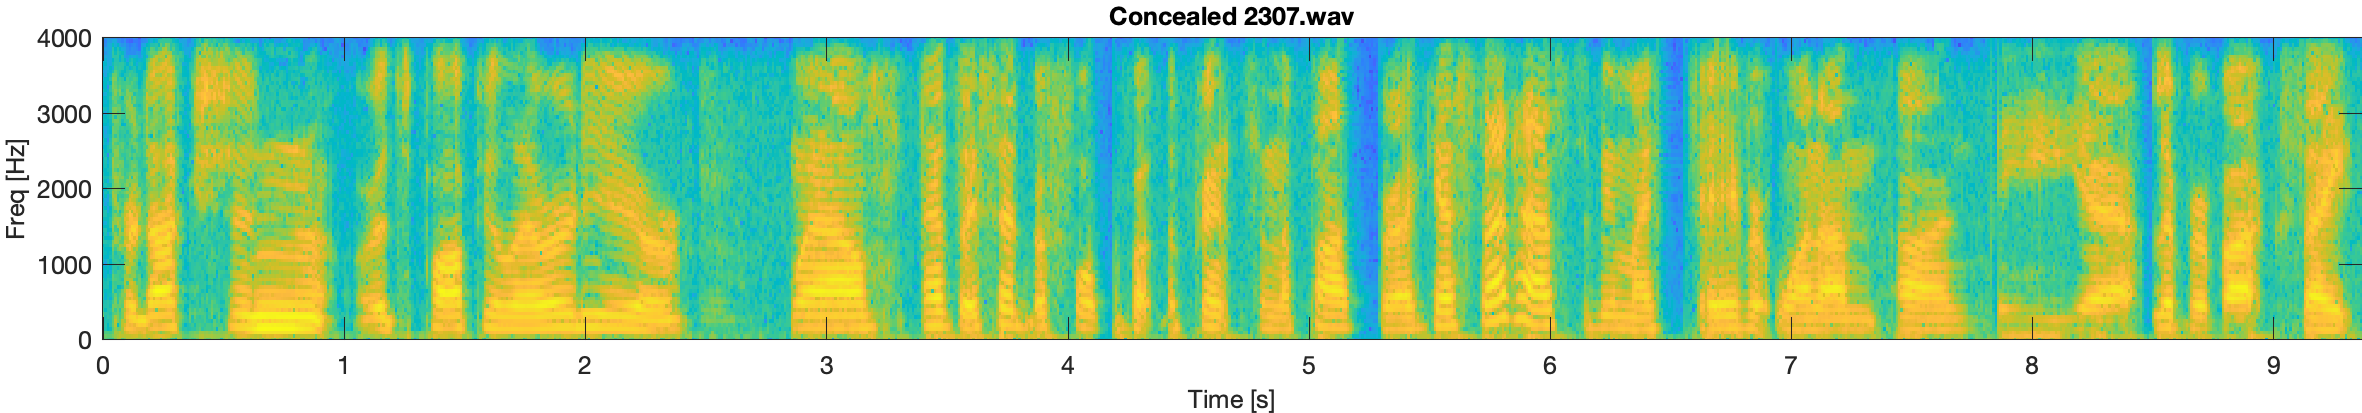 Concealed spectrogram 2307.wav